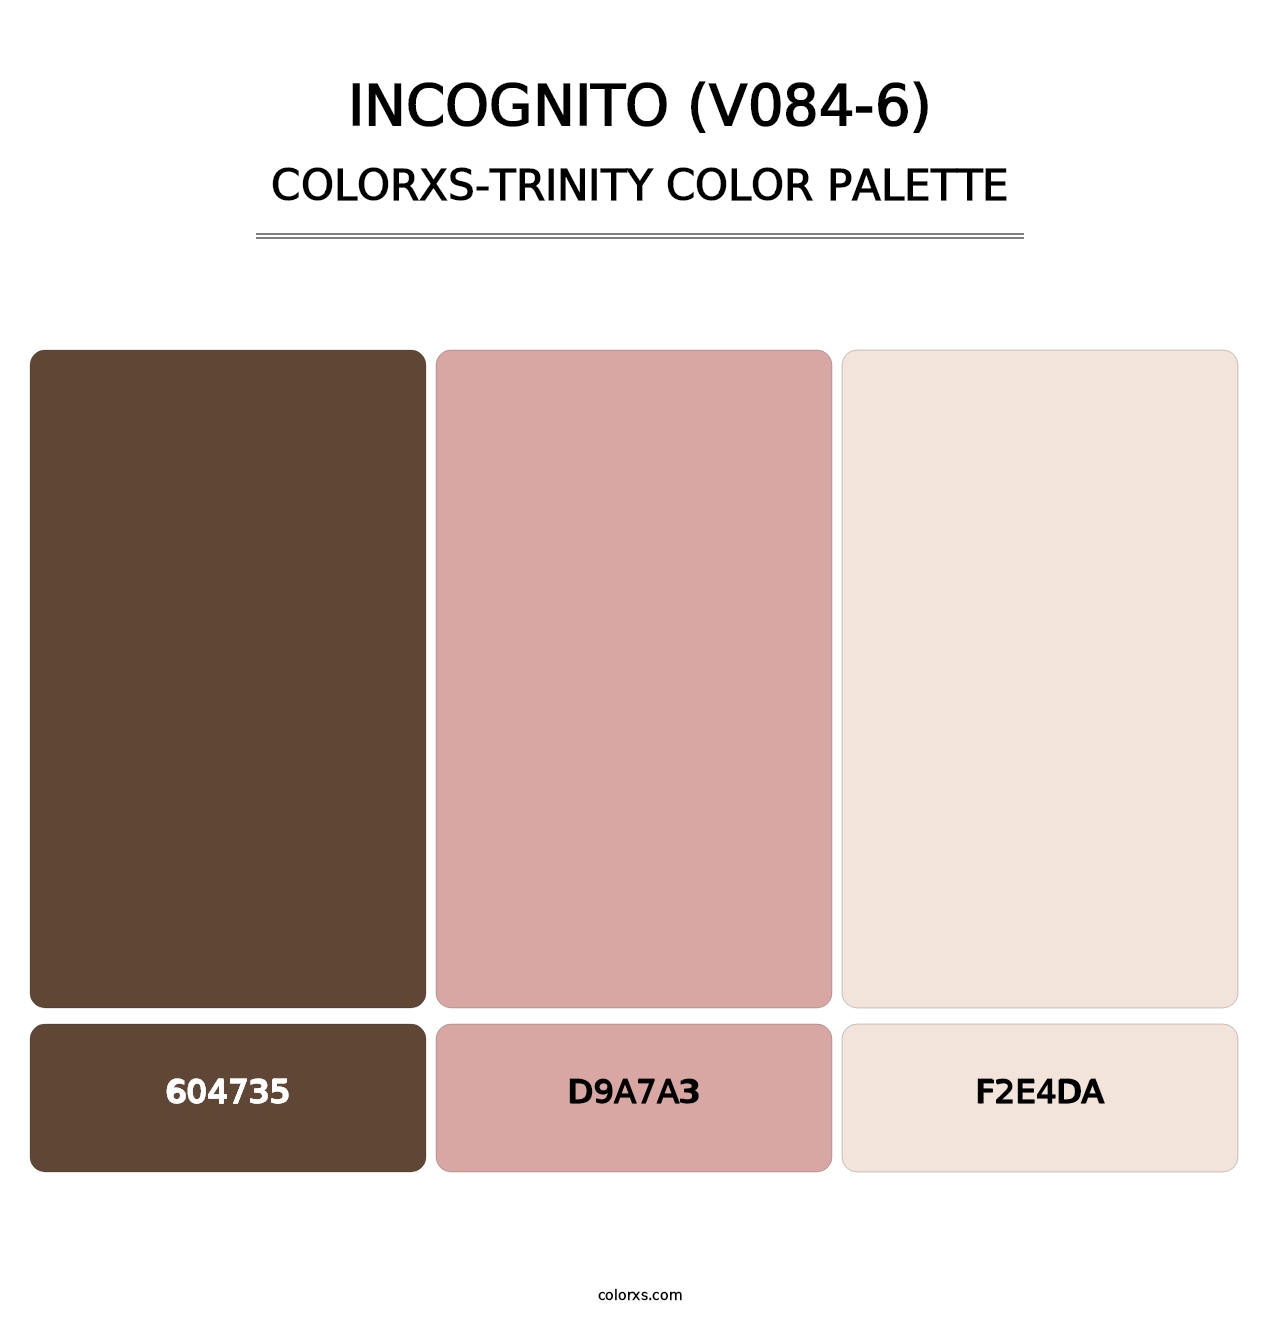 Incognito (V084-6) - Colorxs Trinity Palette